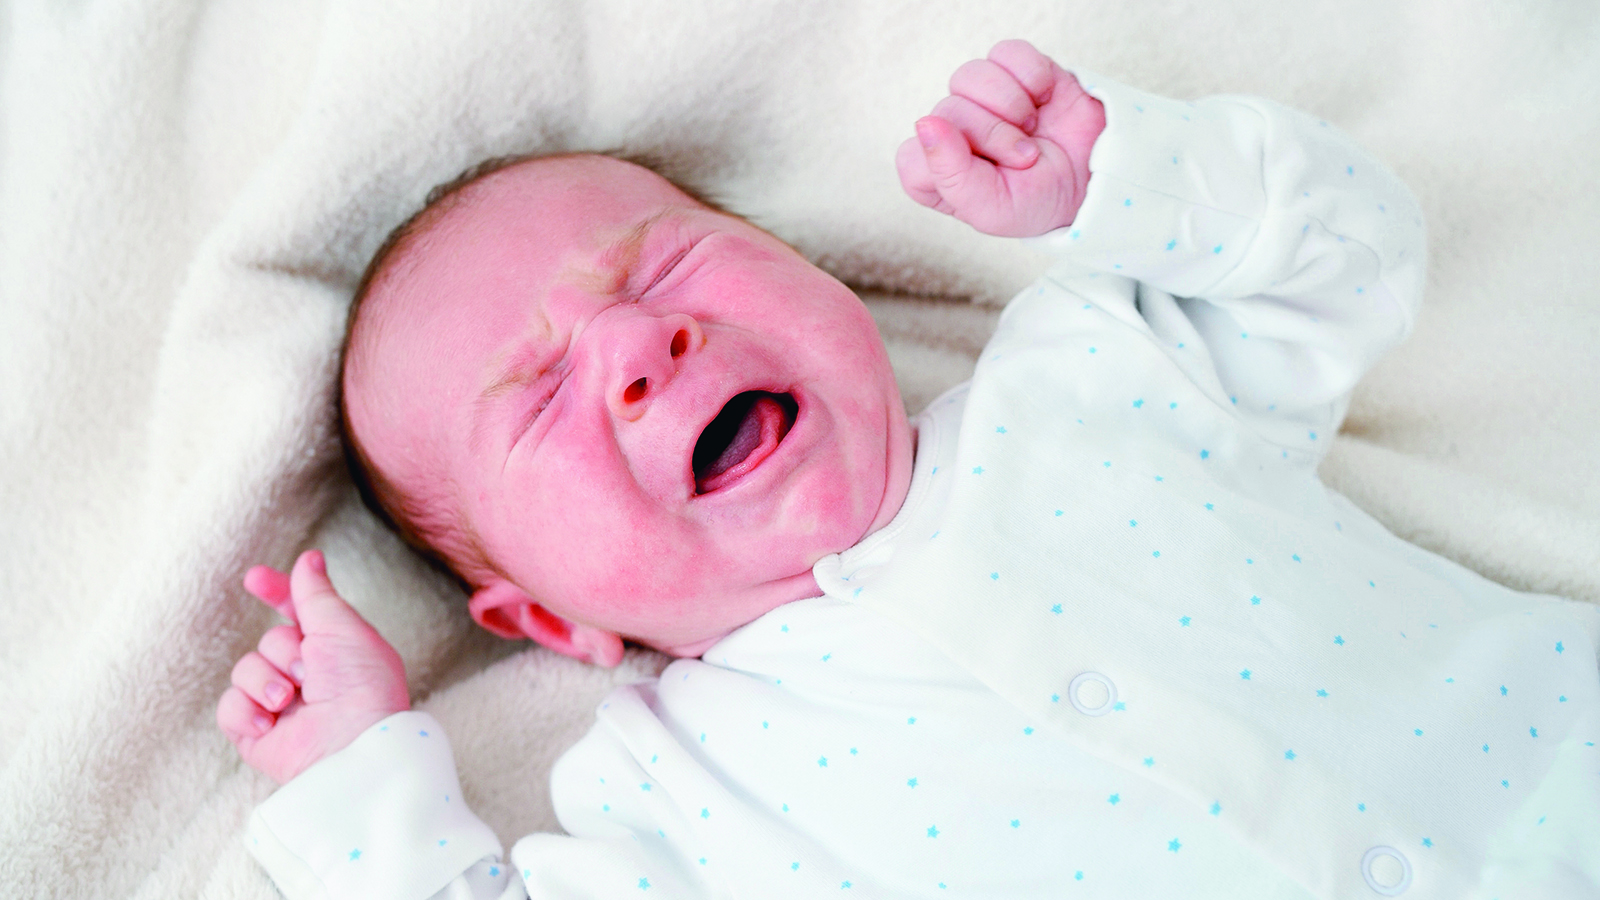 Le Journal Saint-François  Comment calmer un bébé qui pleure?